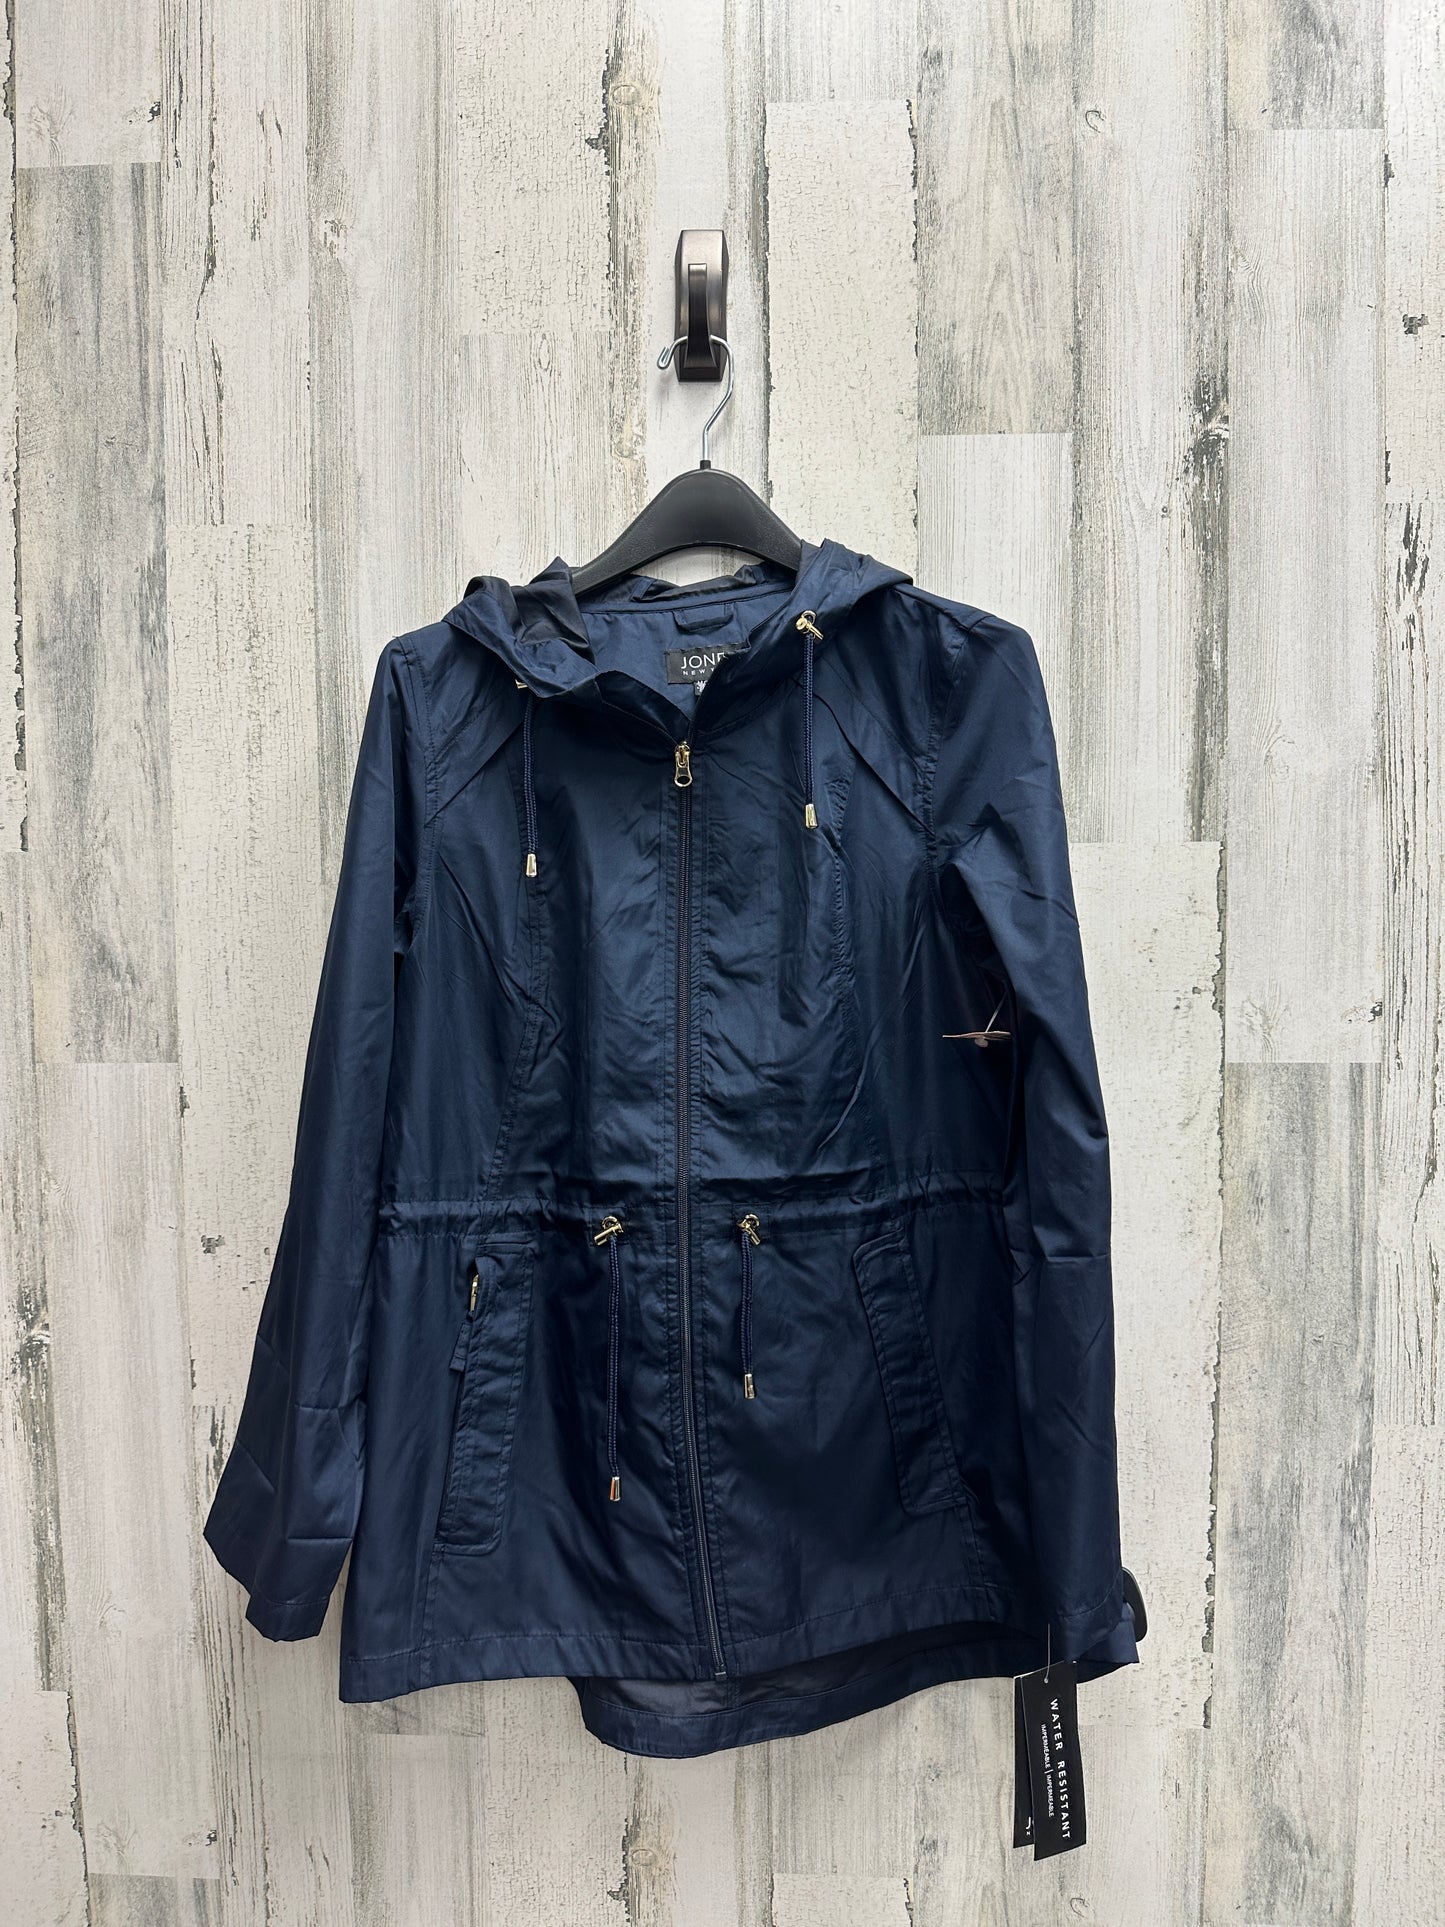 Jacket Windbreaker By Jones New York  Size: M